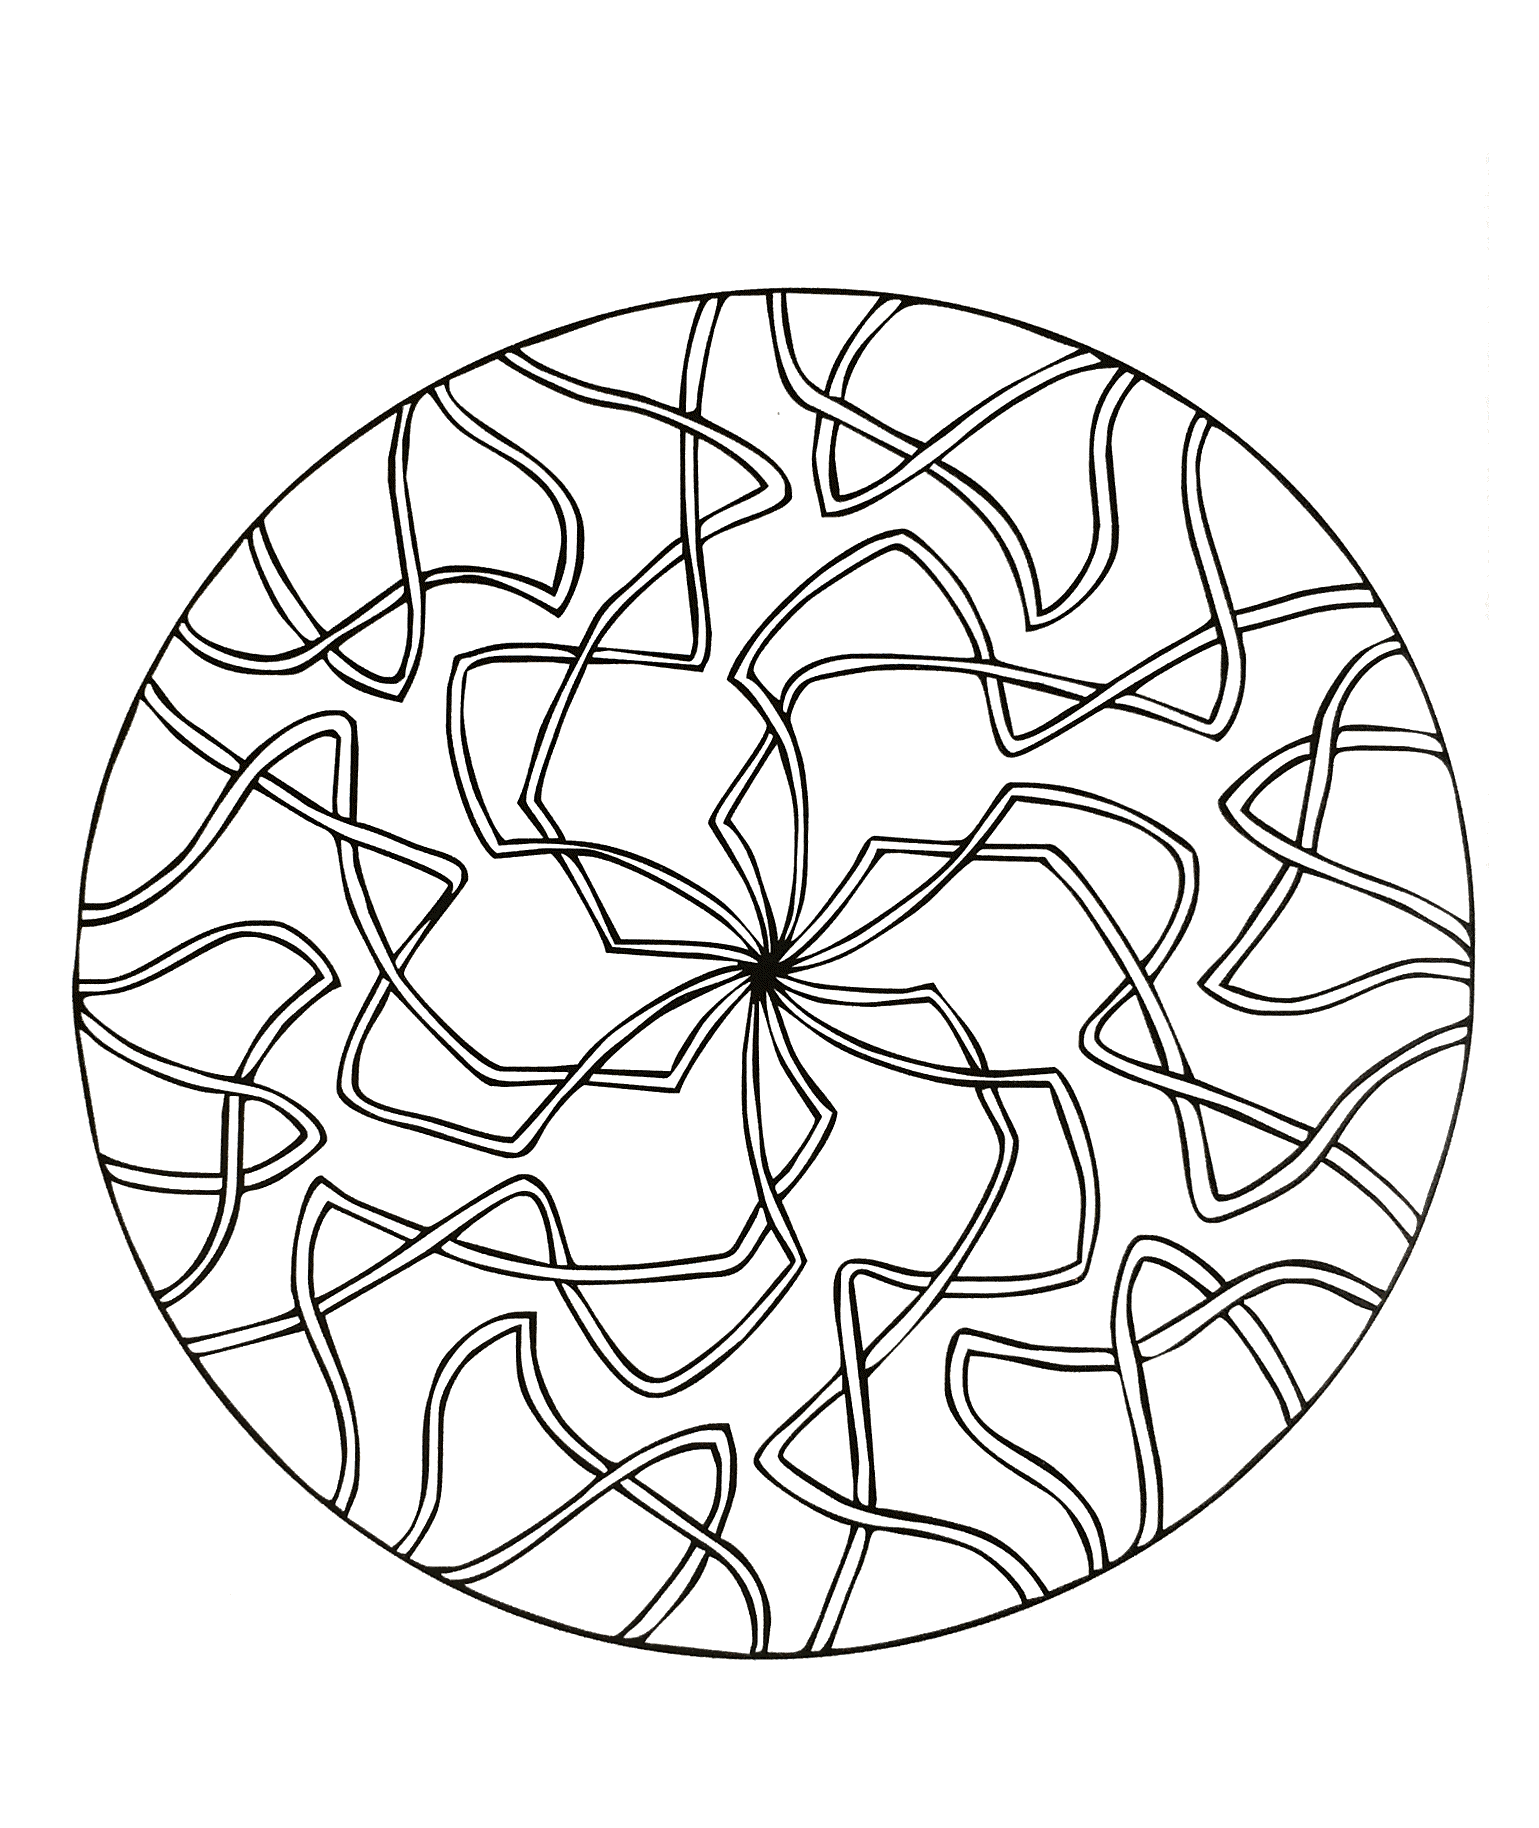 Un Mandala facile à colorier, parfait pour les plus jeunes, avec de larges zones à colorier.